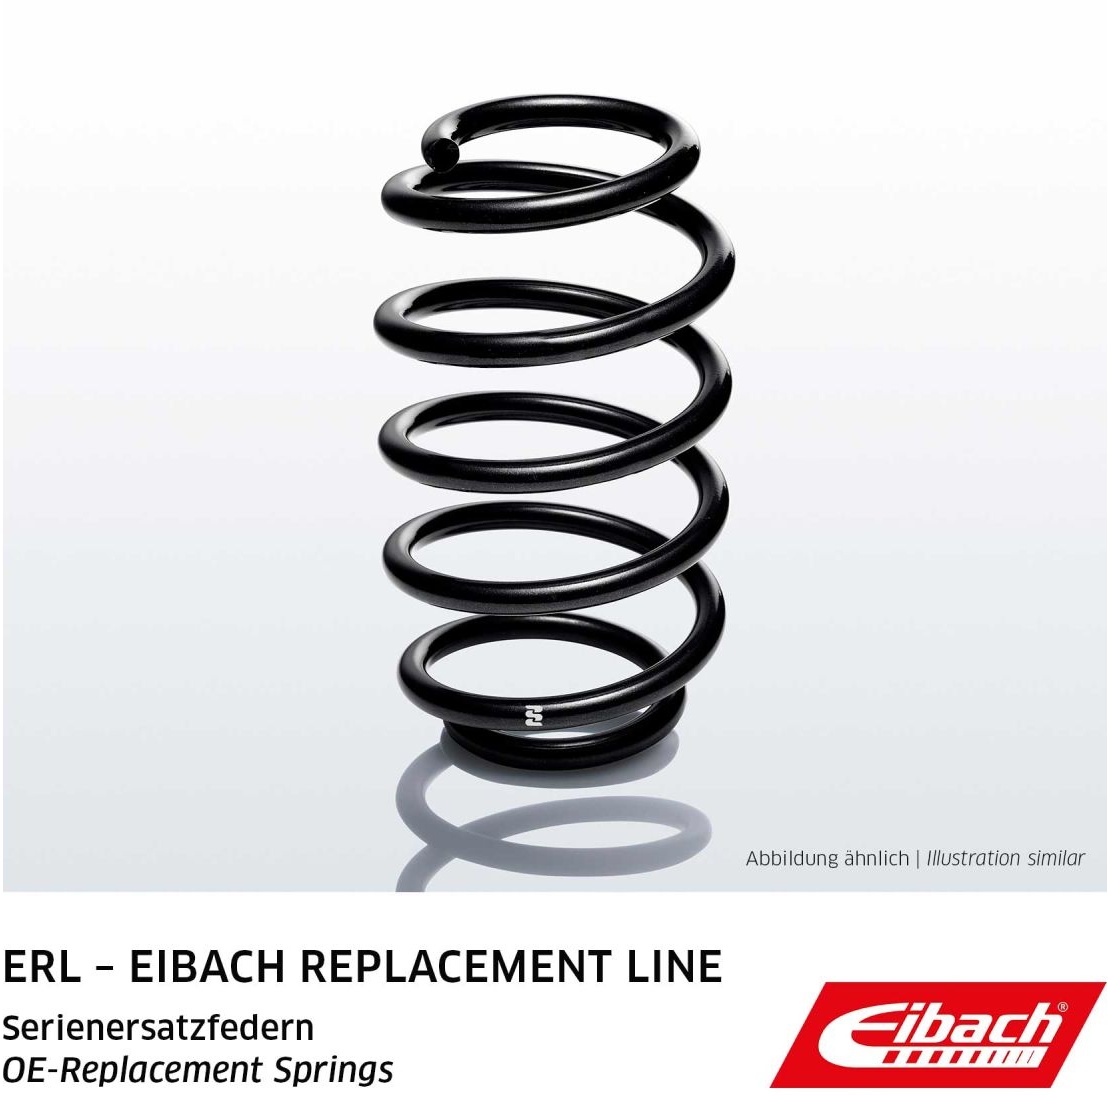 Ressort de suspension ressort ERL (Replacement pour la série) EIBACH R10231